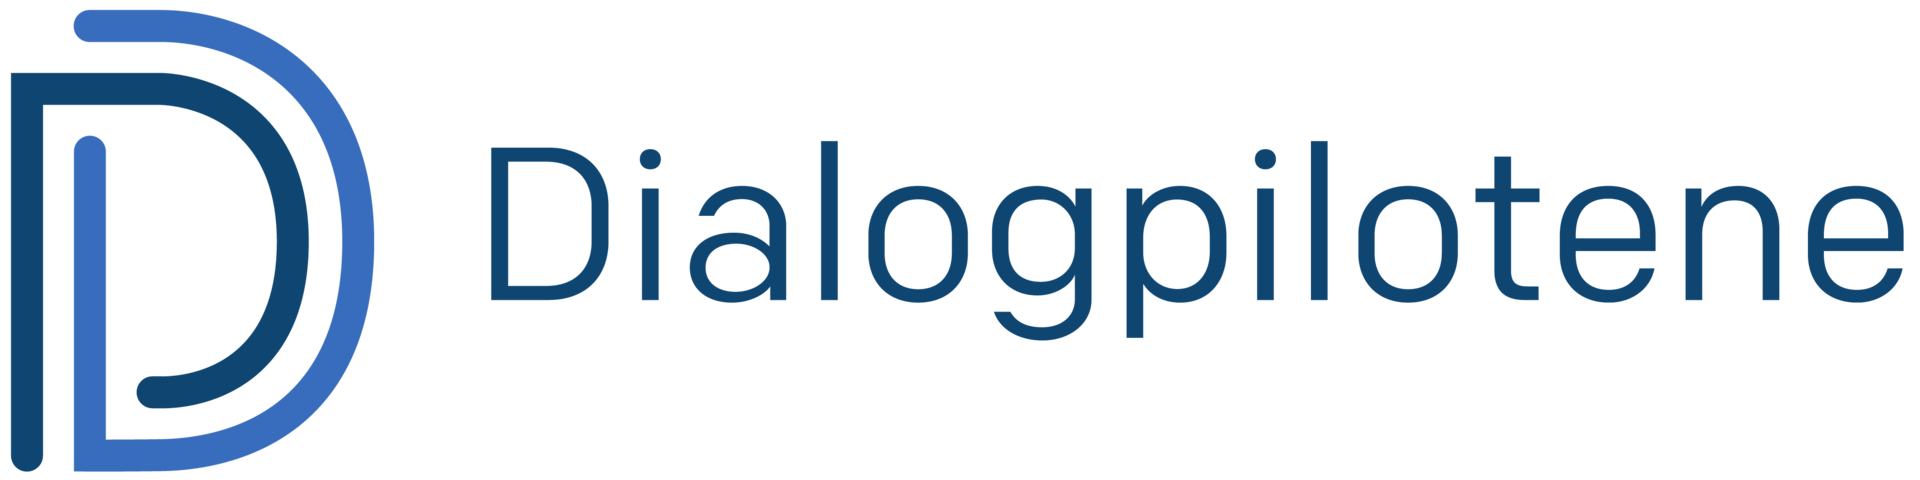 logo for prosjektet Dialogpilotene